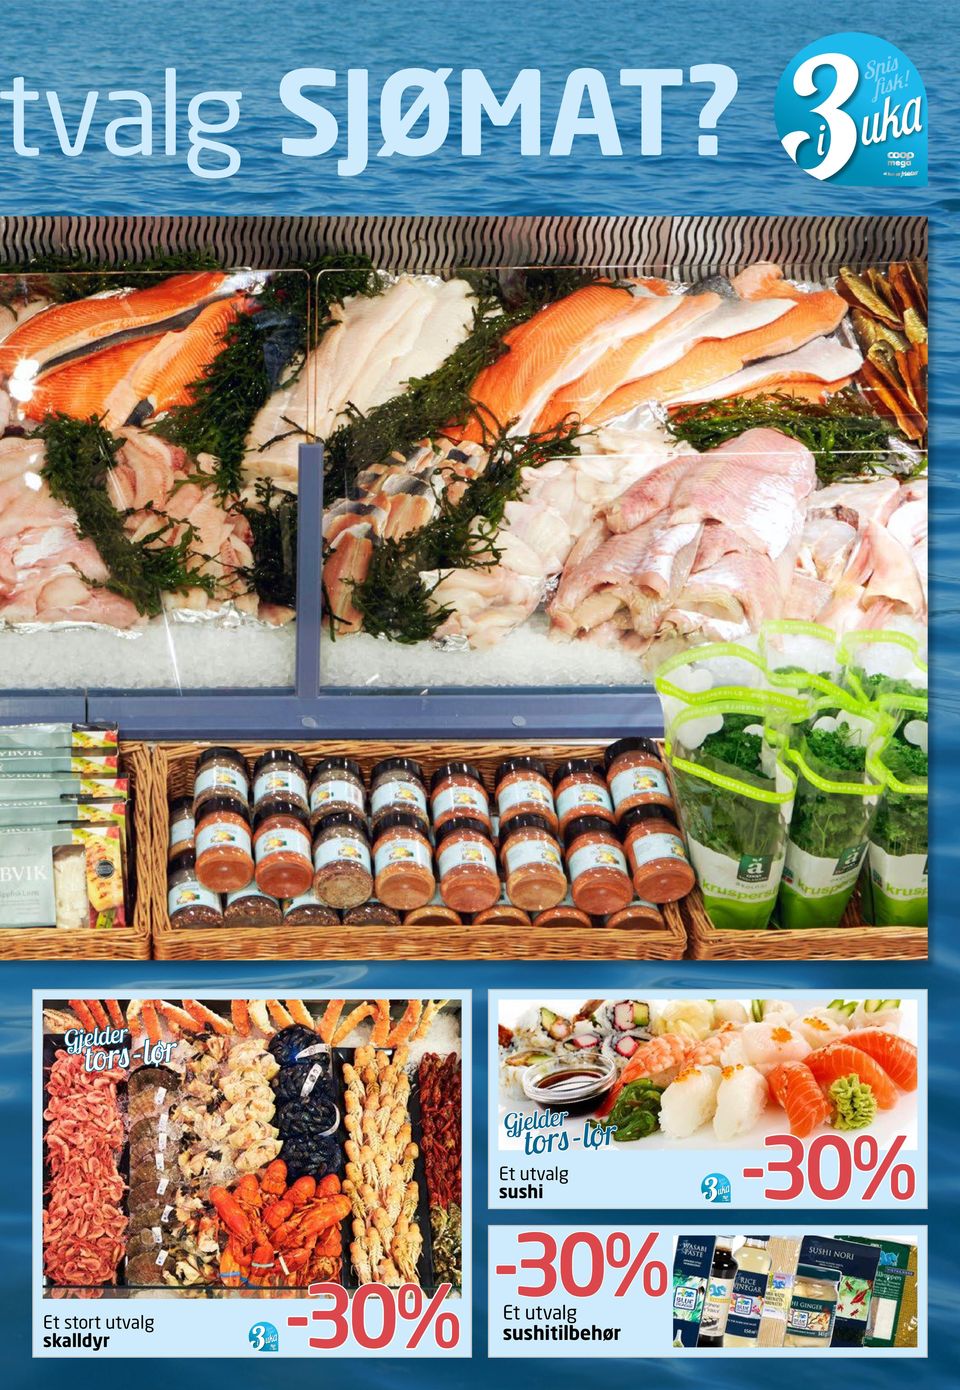 tors-lør Et utvalg sushi Et